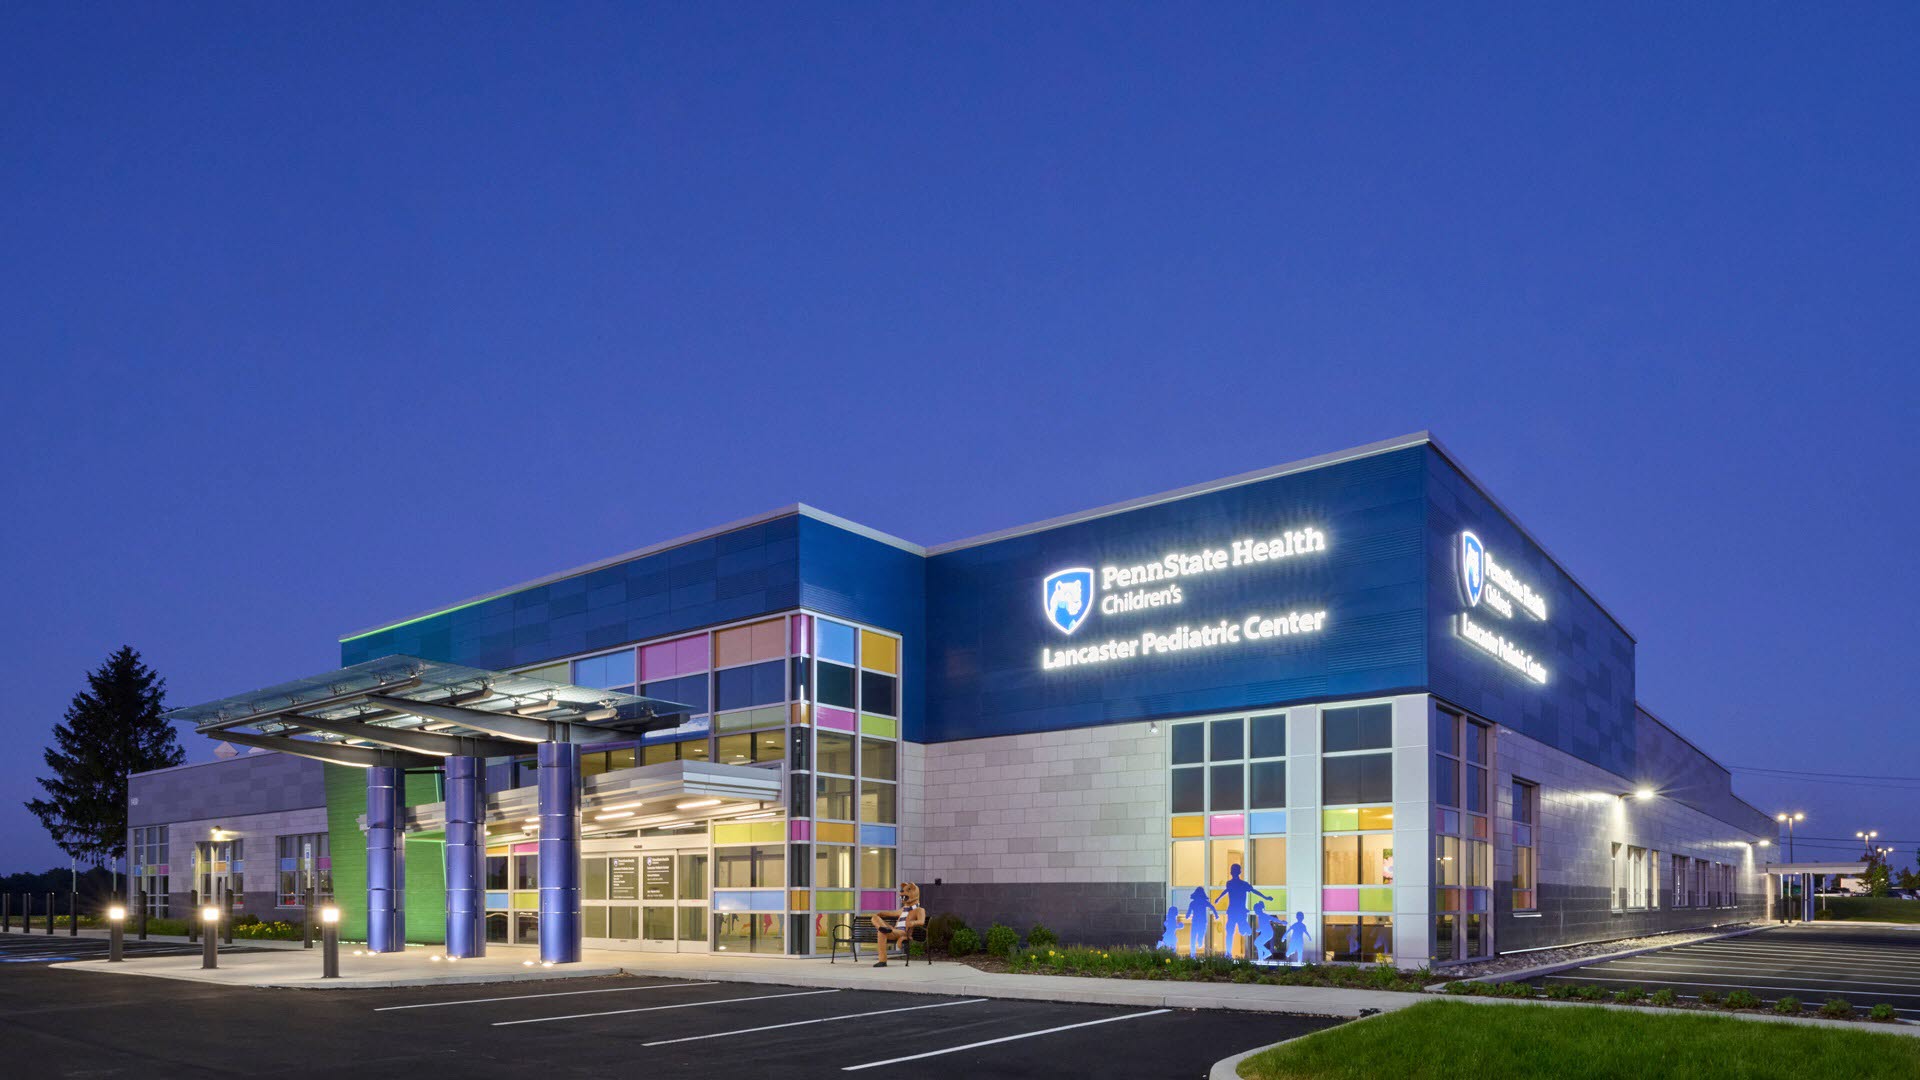 Penn State Health Children's Lancaster Pediatric Center